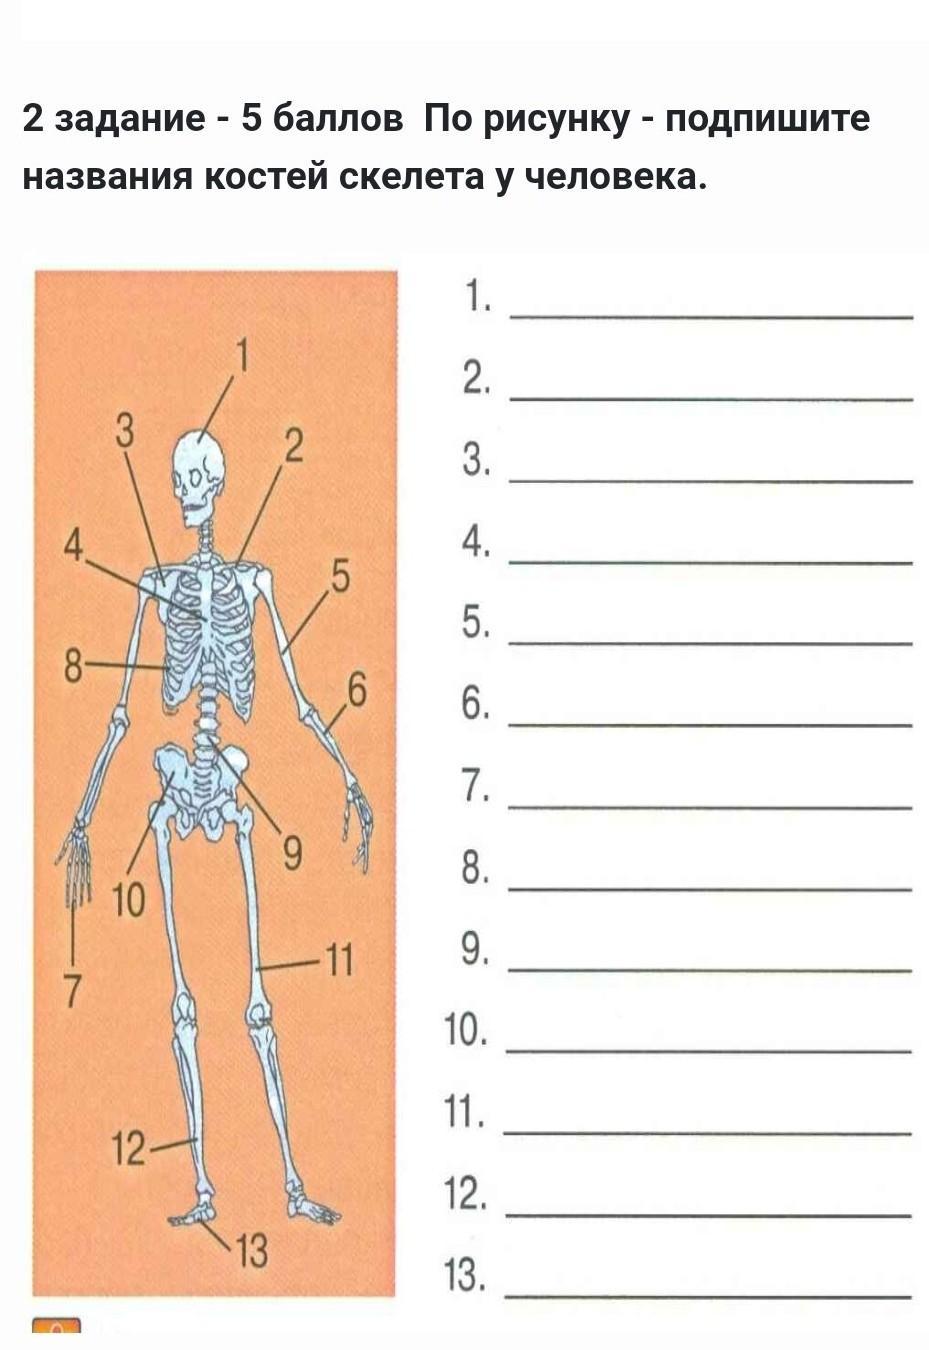 Подпишите названия костей скелета. Подпишите название костей скелета. Подпишите названия костей. Скелет человека с подписанными названиями. По рисунку Подпиши названия костей у человека.